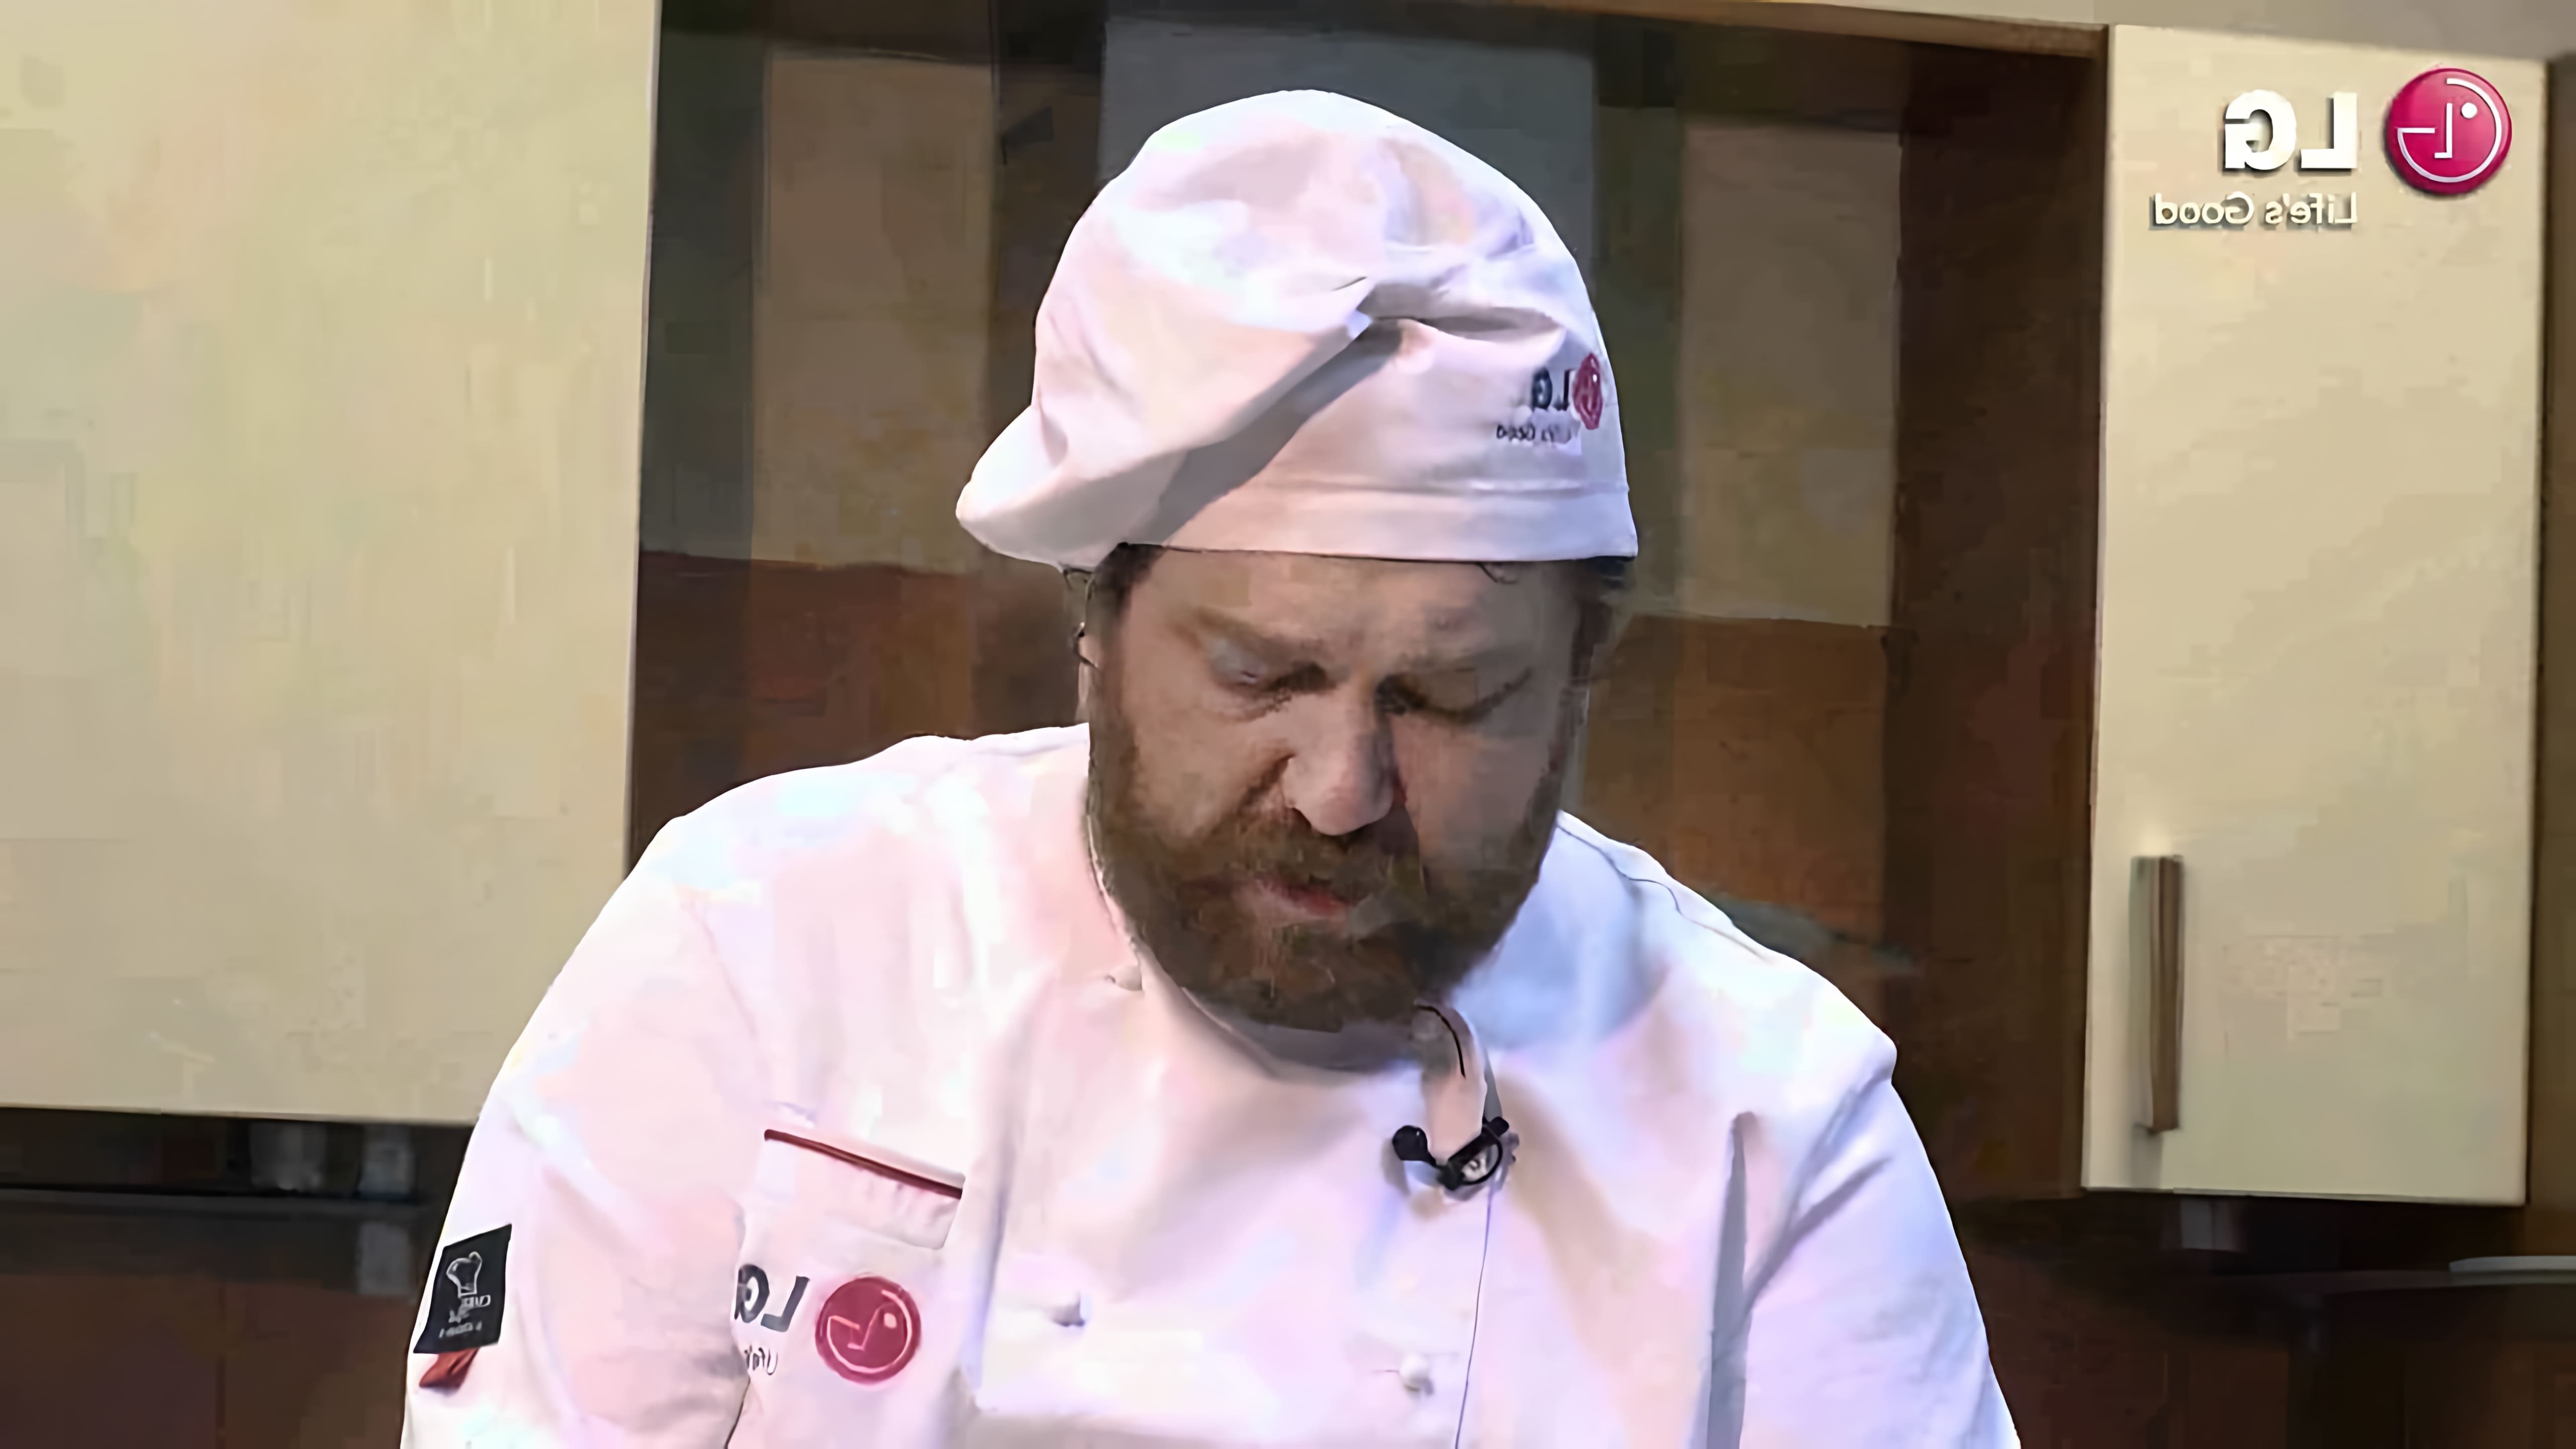 Алексей Зимин - известный шеф-повар и автор многих кулинарных книг